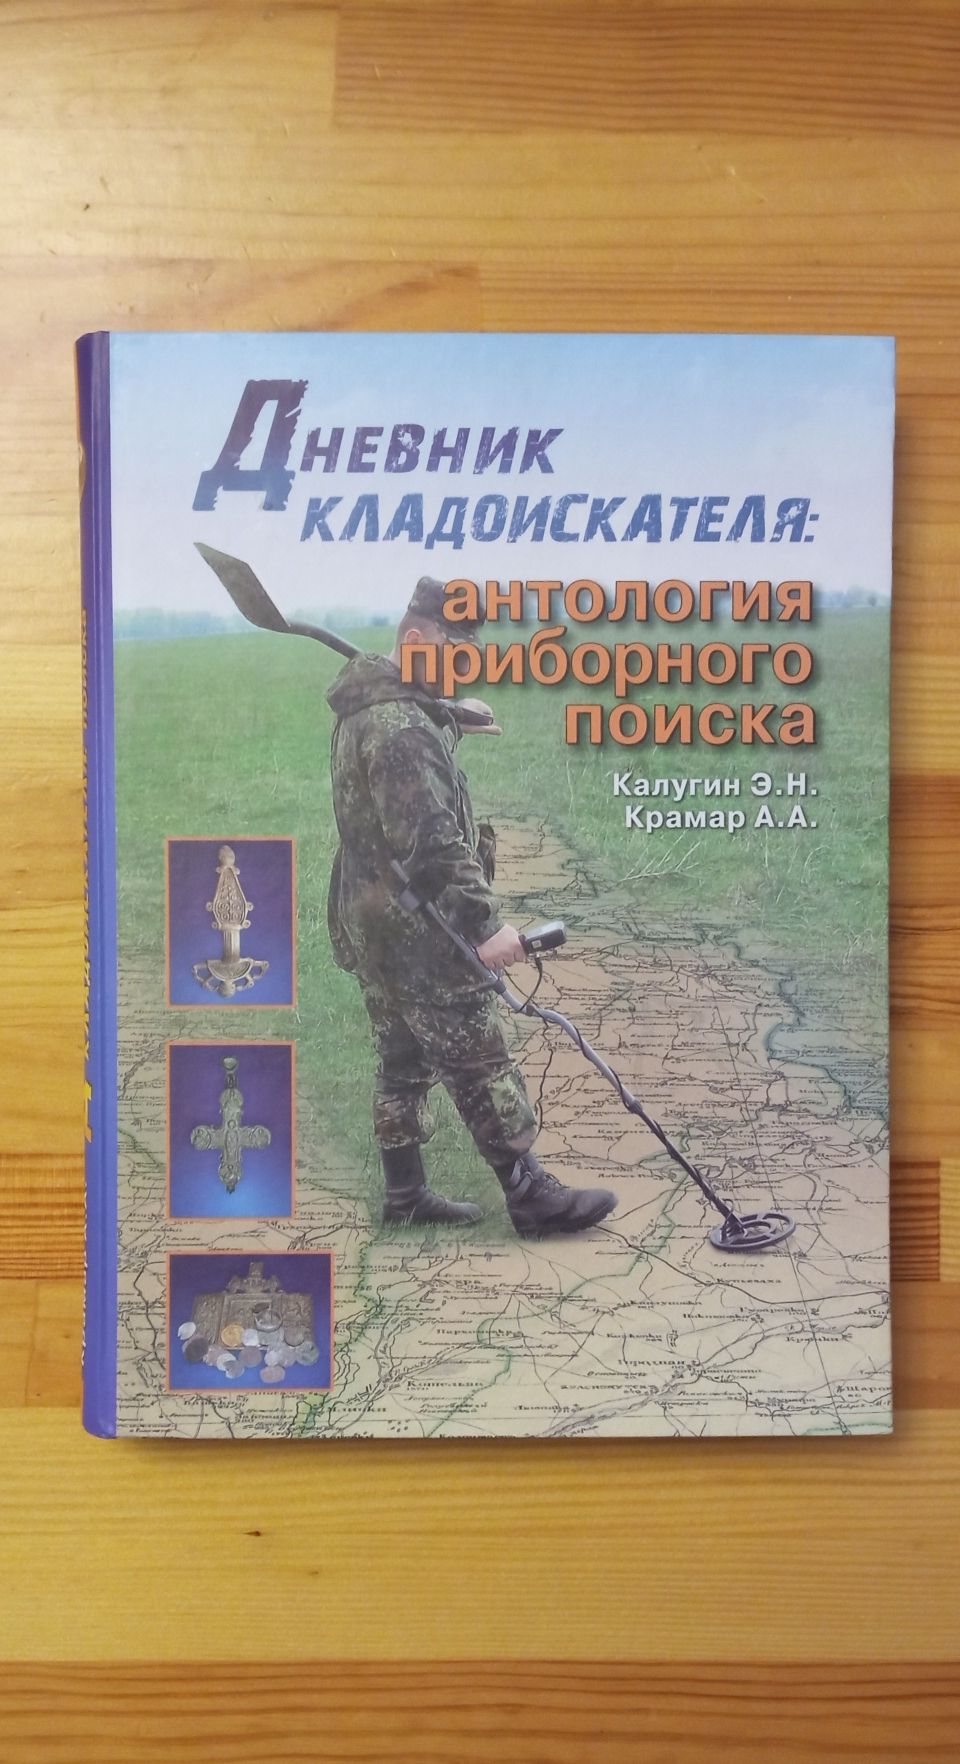 Нова книга: "Дневник кладоискателя: антология приборного поиска".